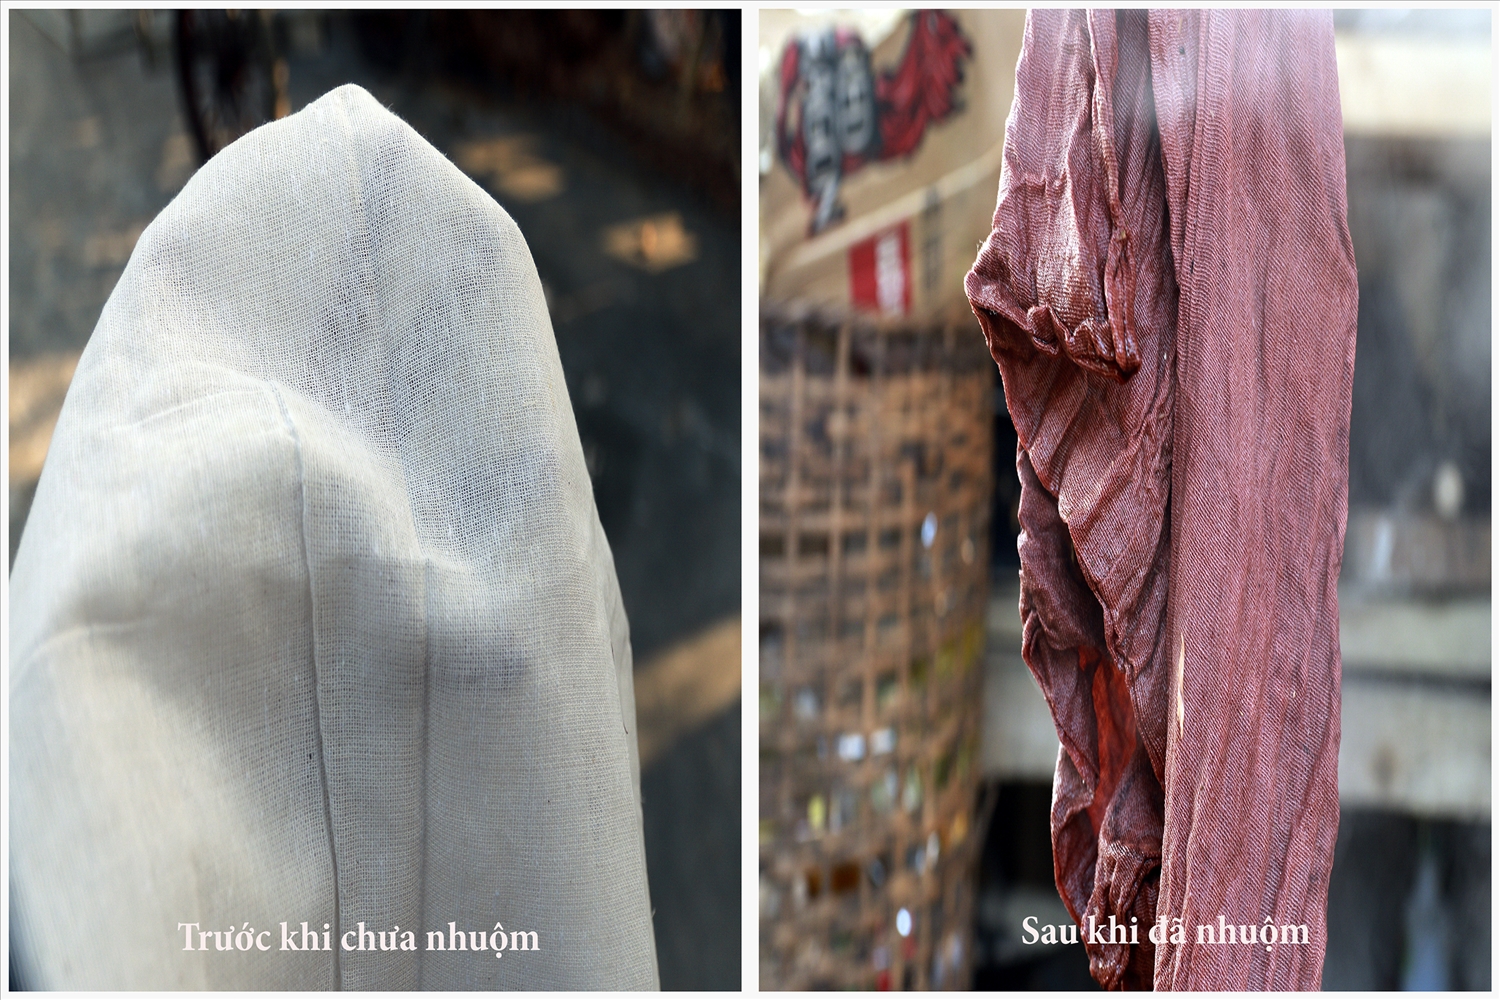 Tấm vải trước và sau khi nhuộm màu